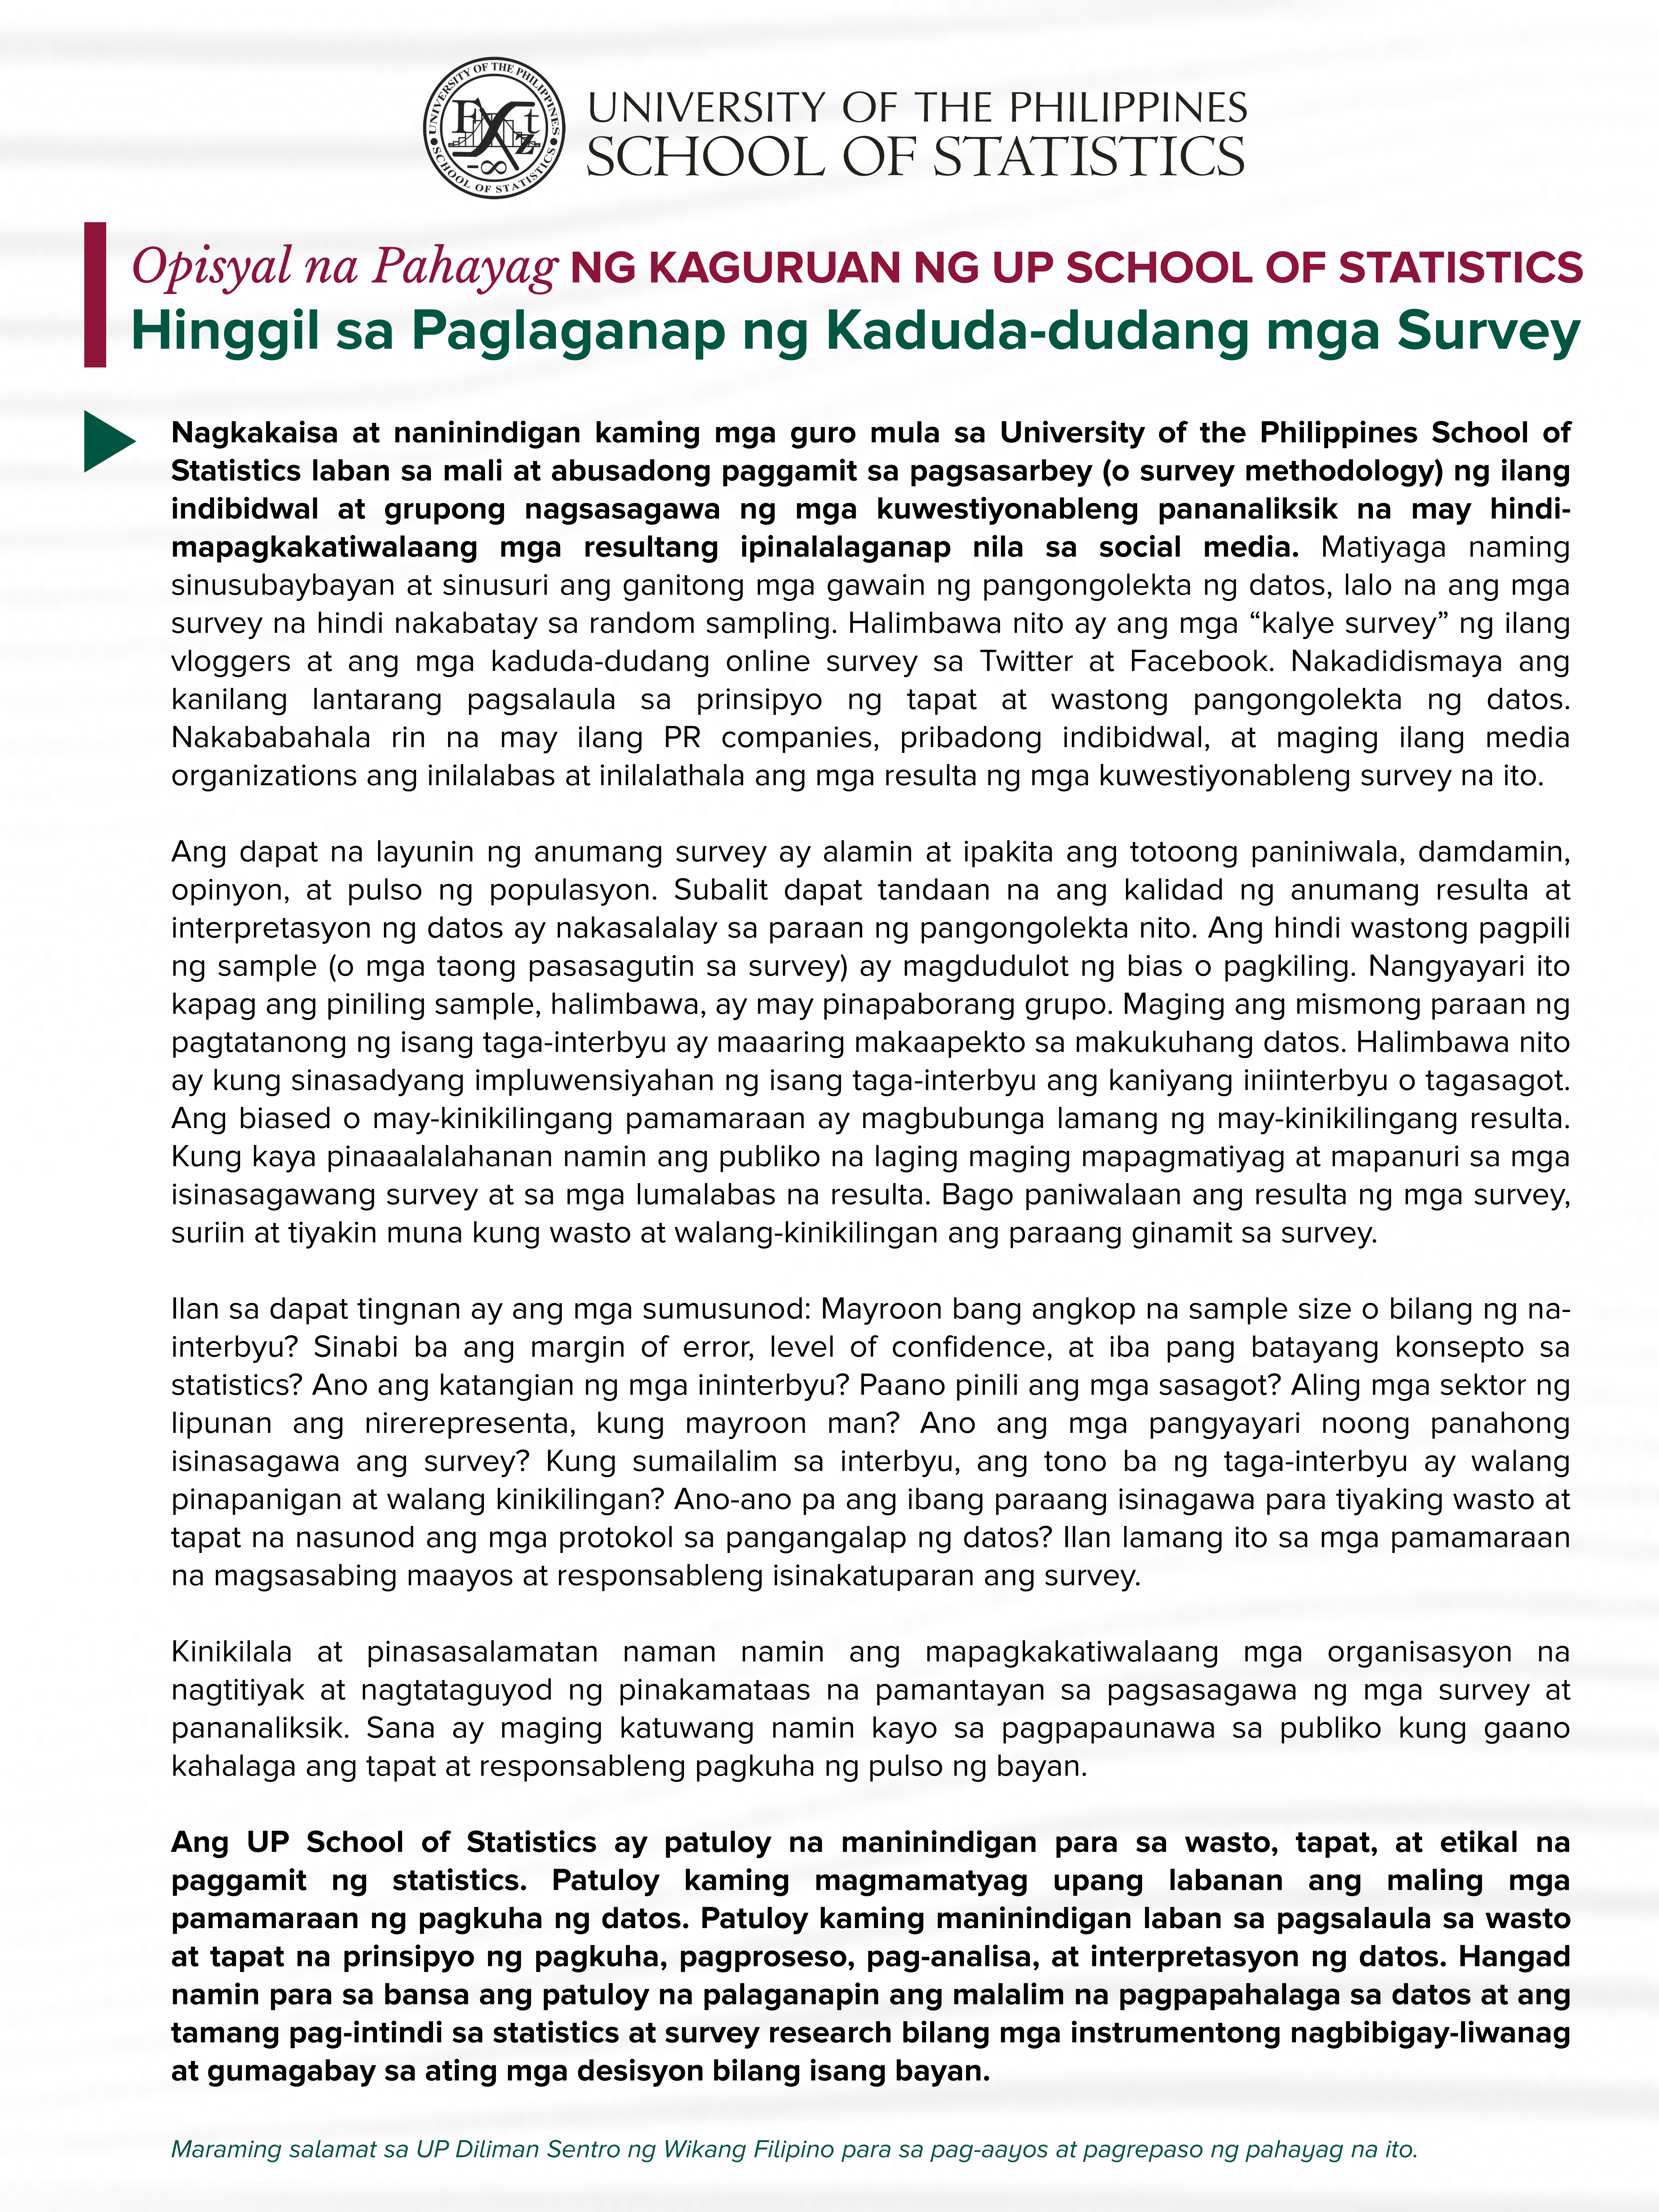 Image for Opisyal na Pahayag ng Kaguruan ng UP School of Statistics Hinggil sa Paglaganap ng Kaduda-dudang mga Survey